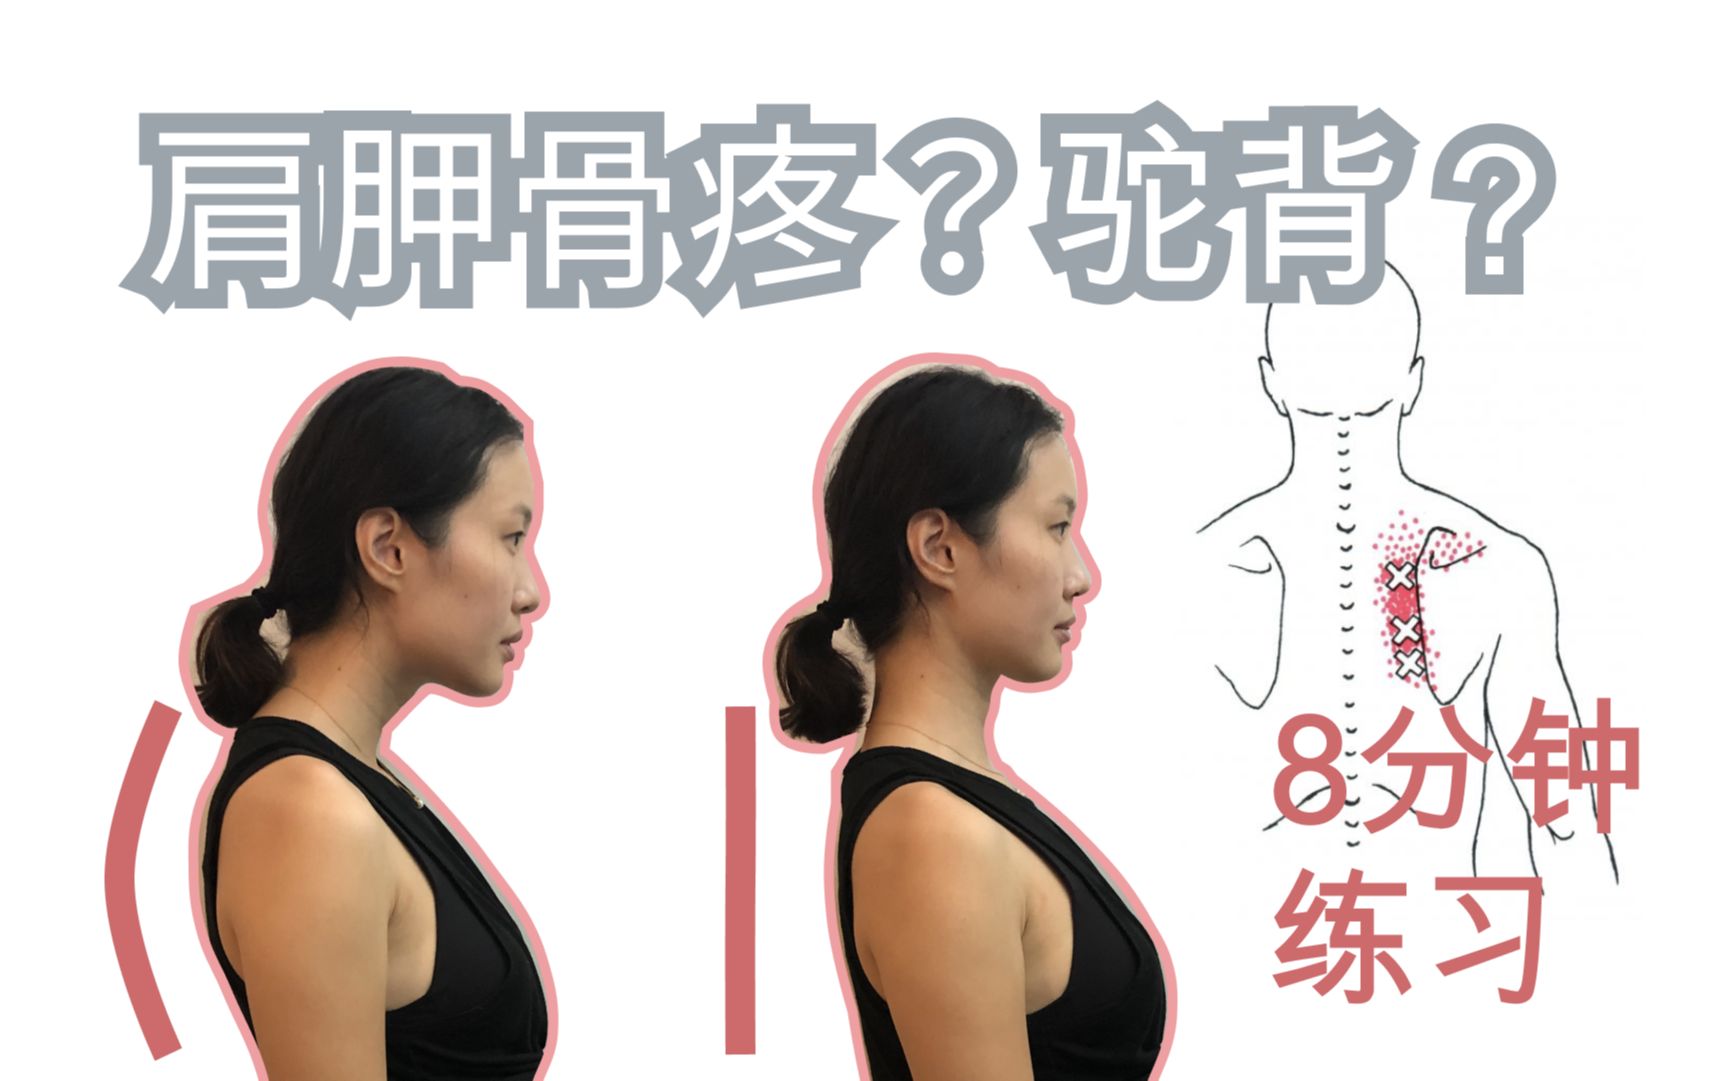 圆肩驼背1如何维持好坐姿8分钟改善肩胛骨疼痛及圆肩驼背